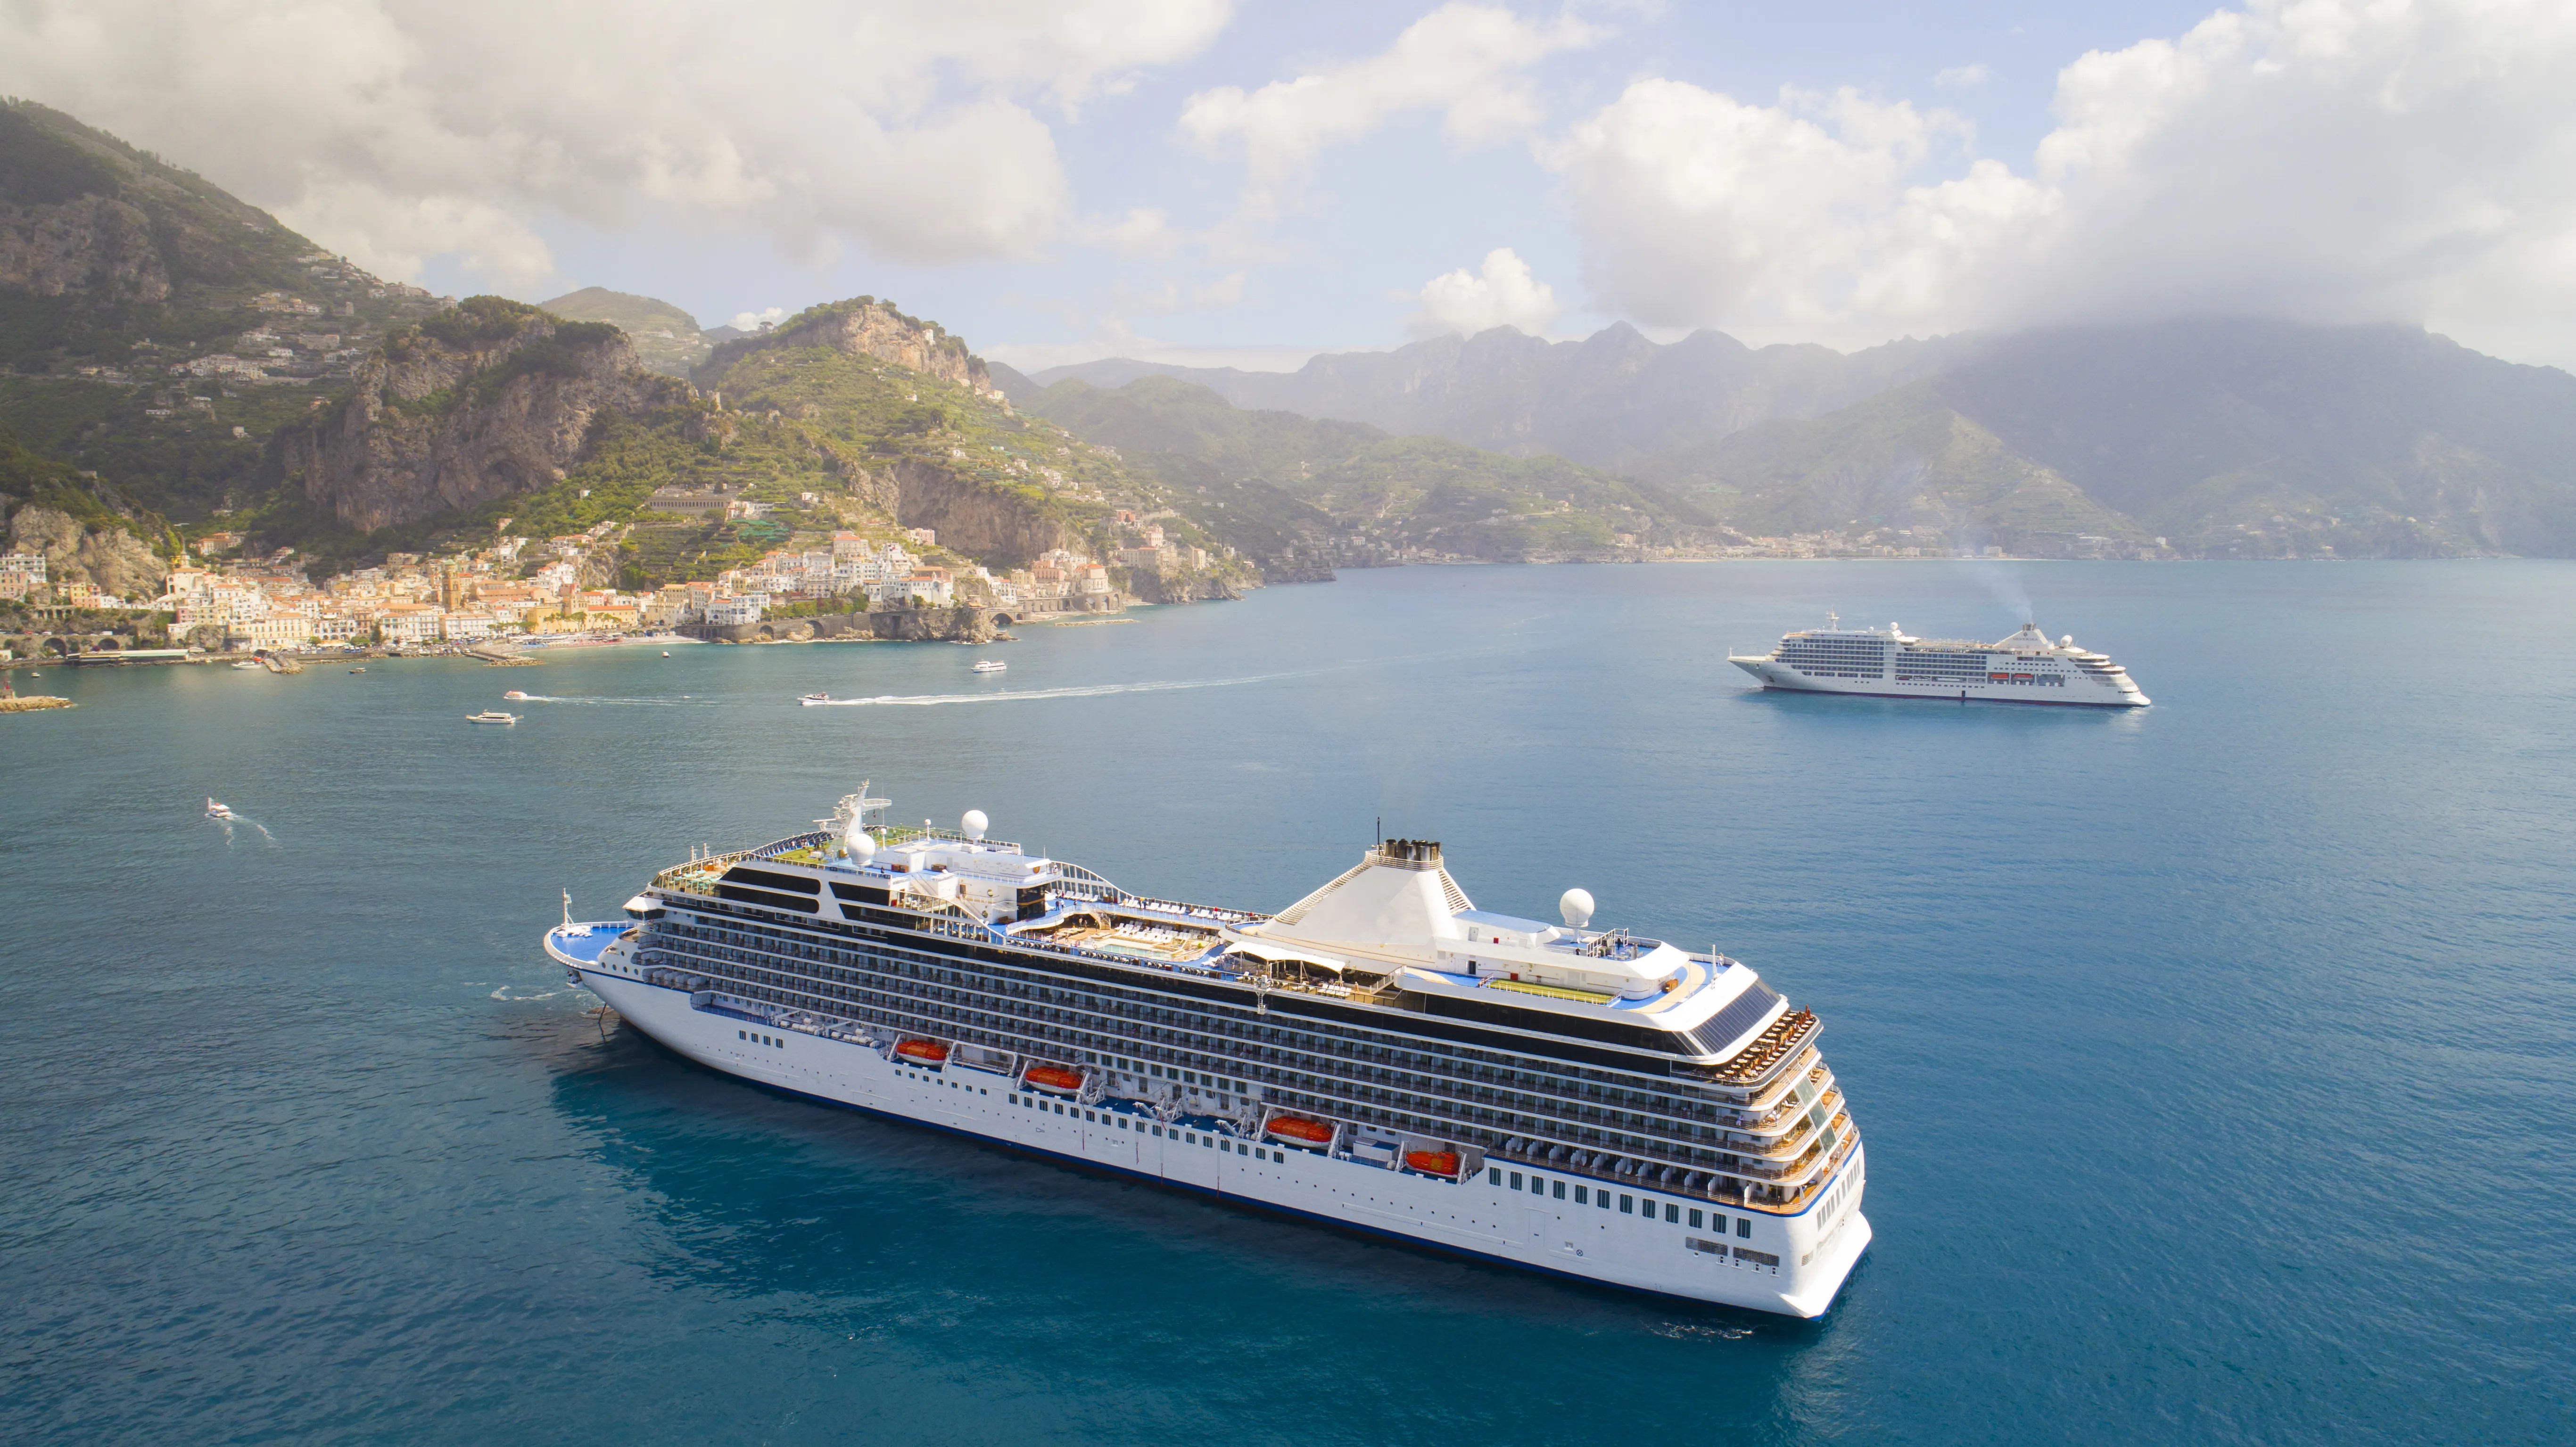 Bu Yaz Akdeniz’i Tanımak İsteyenlere Alternatif: Cruise Turları